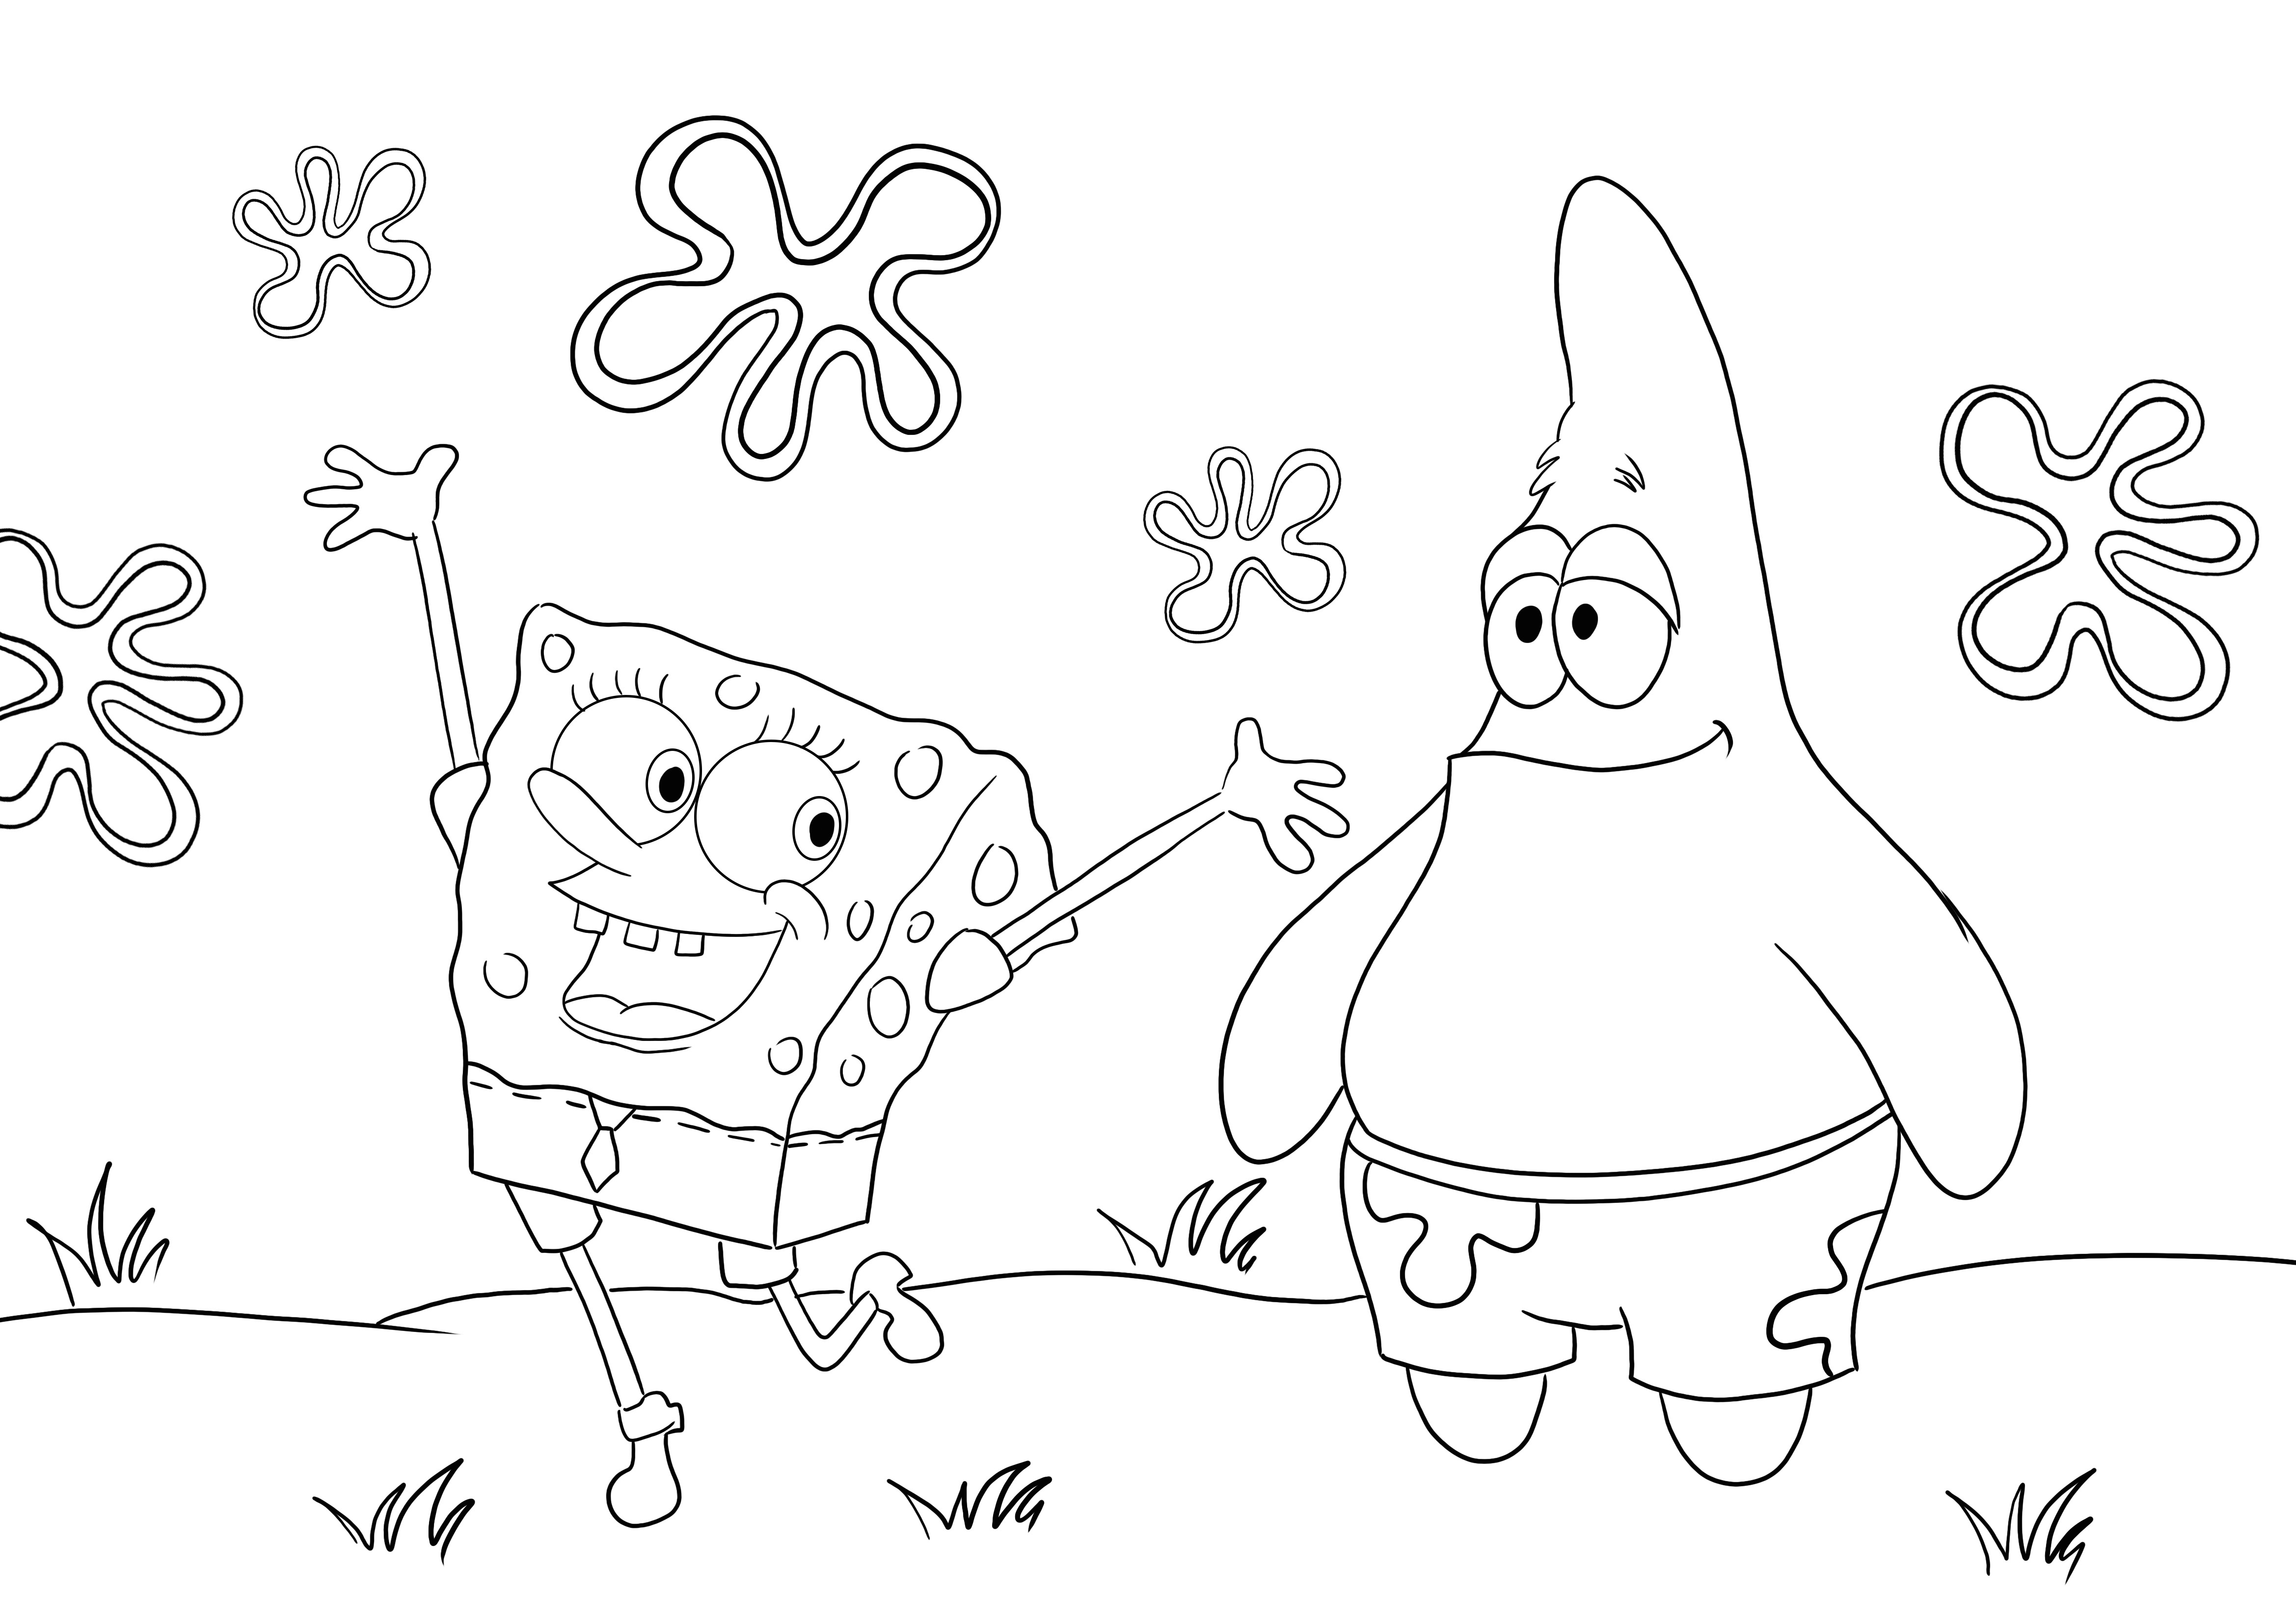 Happy Sponge SquarePants y su amigo Patrick para colorear e imprimir gratis